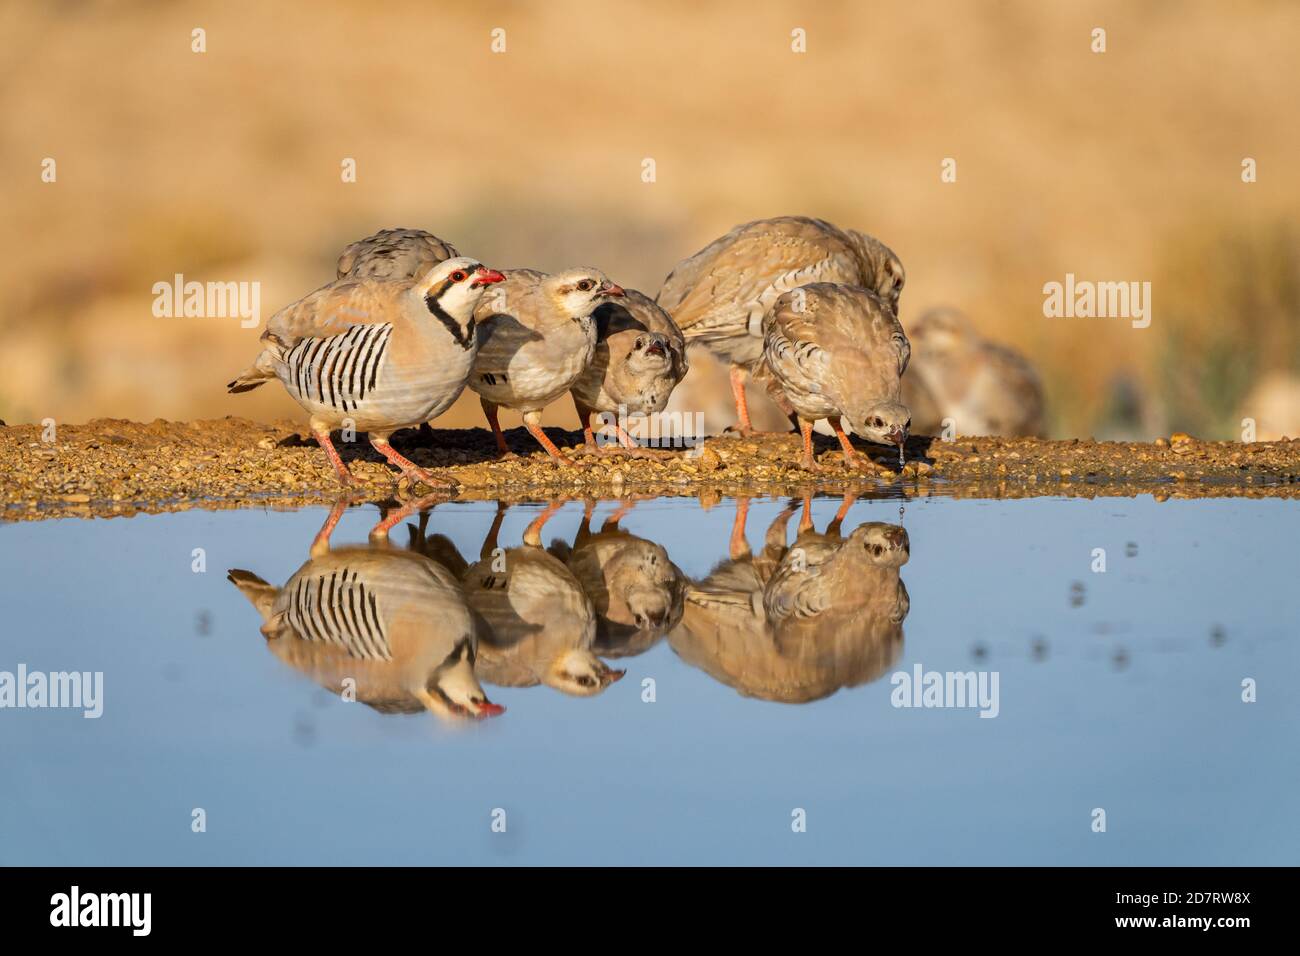 Chukar Partridge oder Chukar (Alectoris chukar) fotografiert in Israel, in der Nähe eines Wasserpools Negev Wüste. Ein paläarktischer Hochland-Gamebird im Fasanenfam Stockfoto